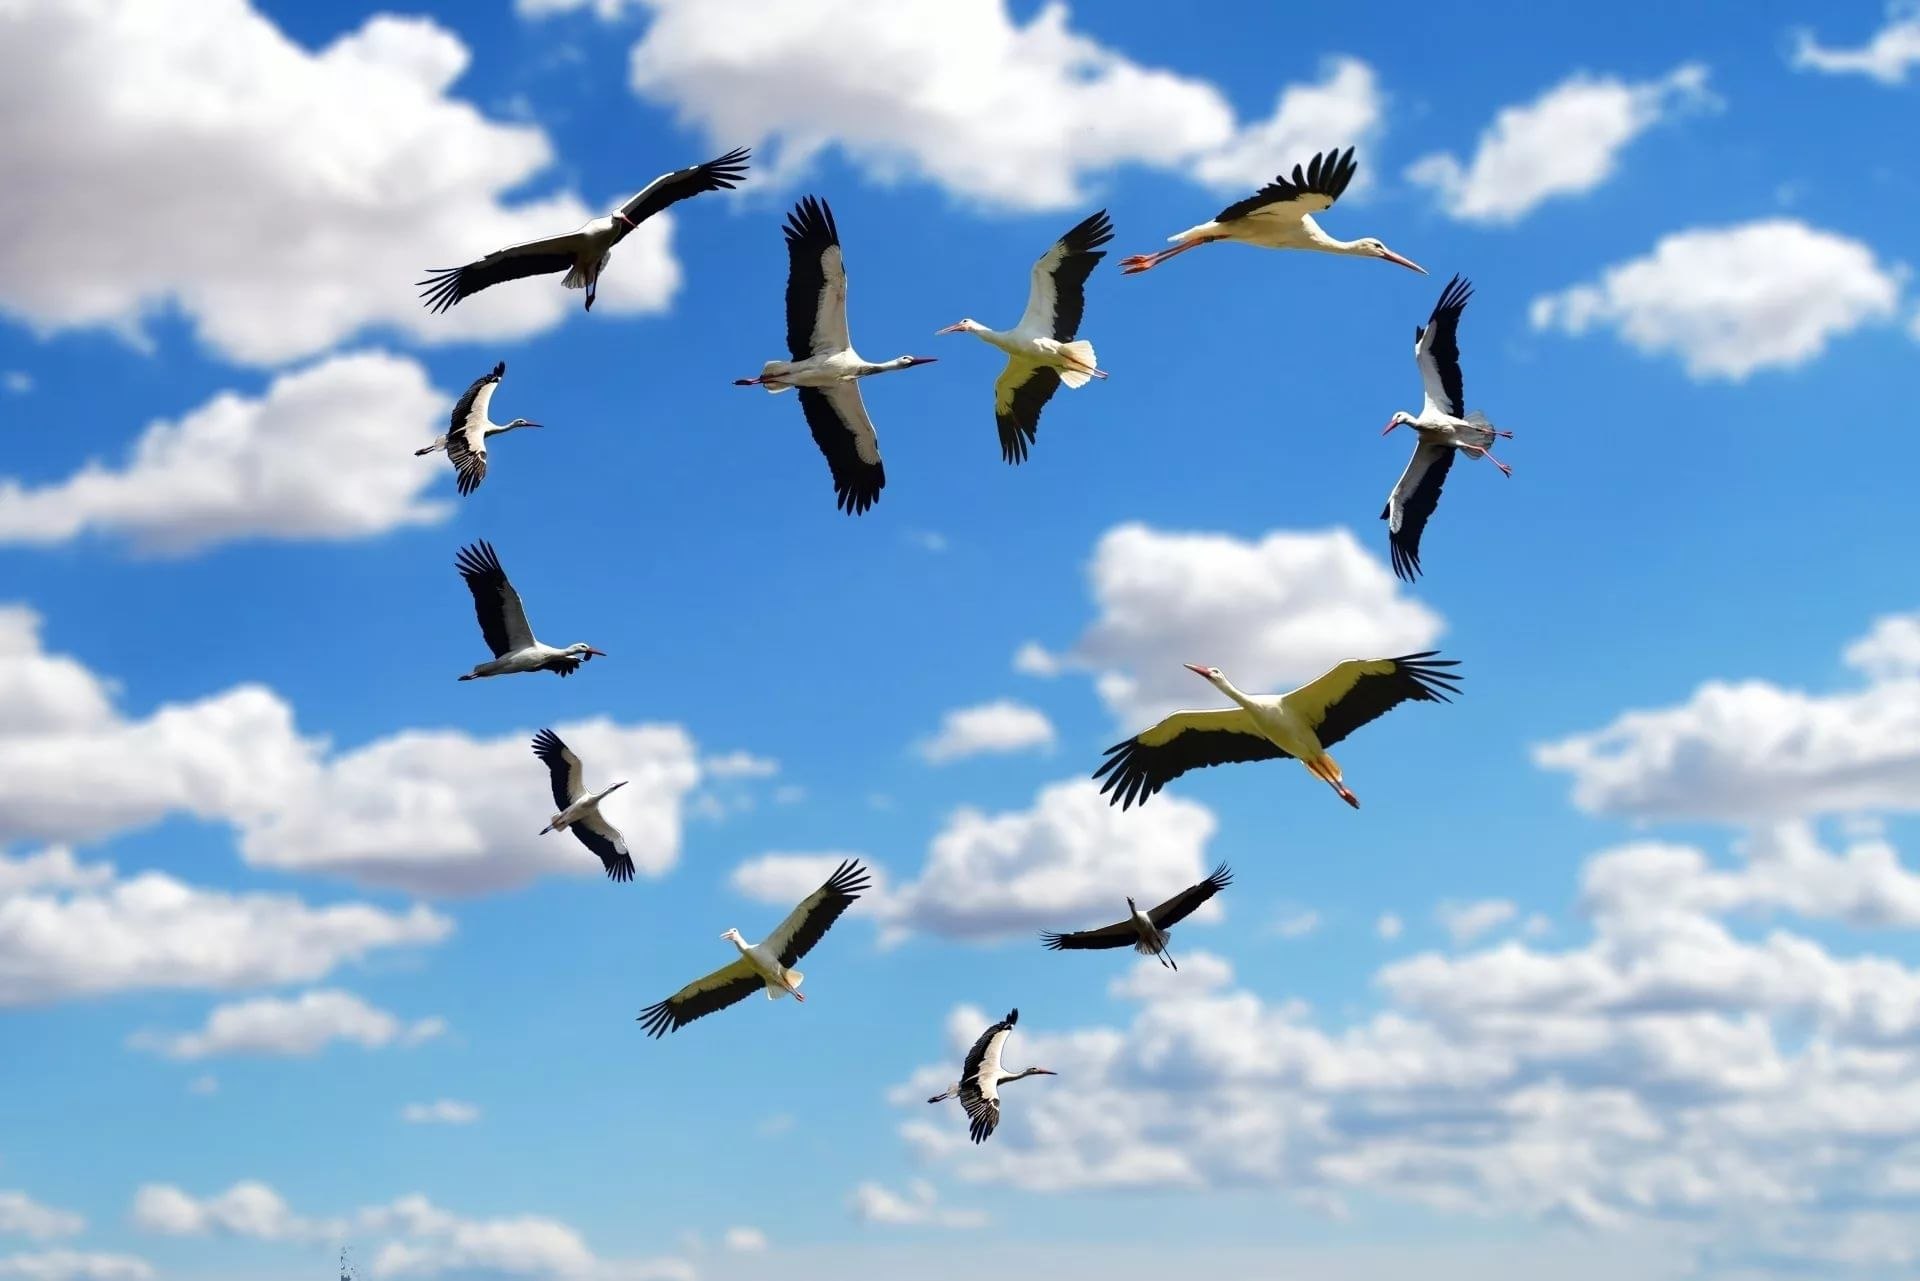 Летящих птиц в хорошем качестве - картинки и фото биржевые-записки.рф